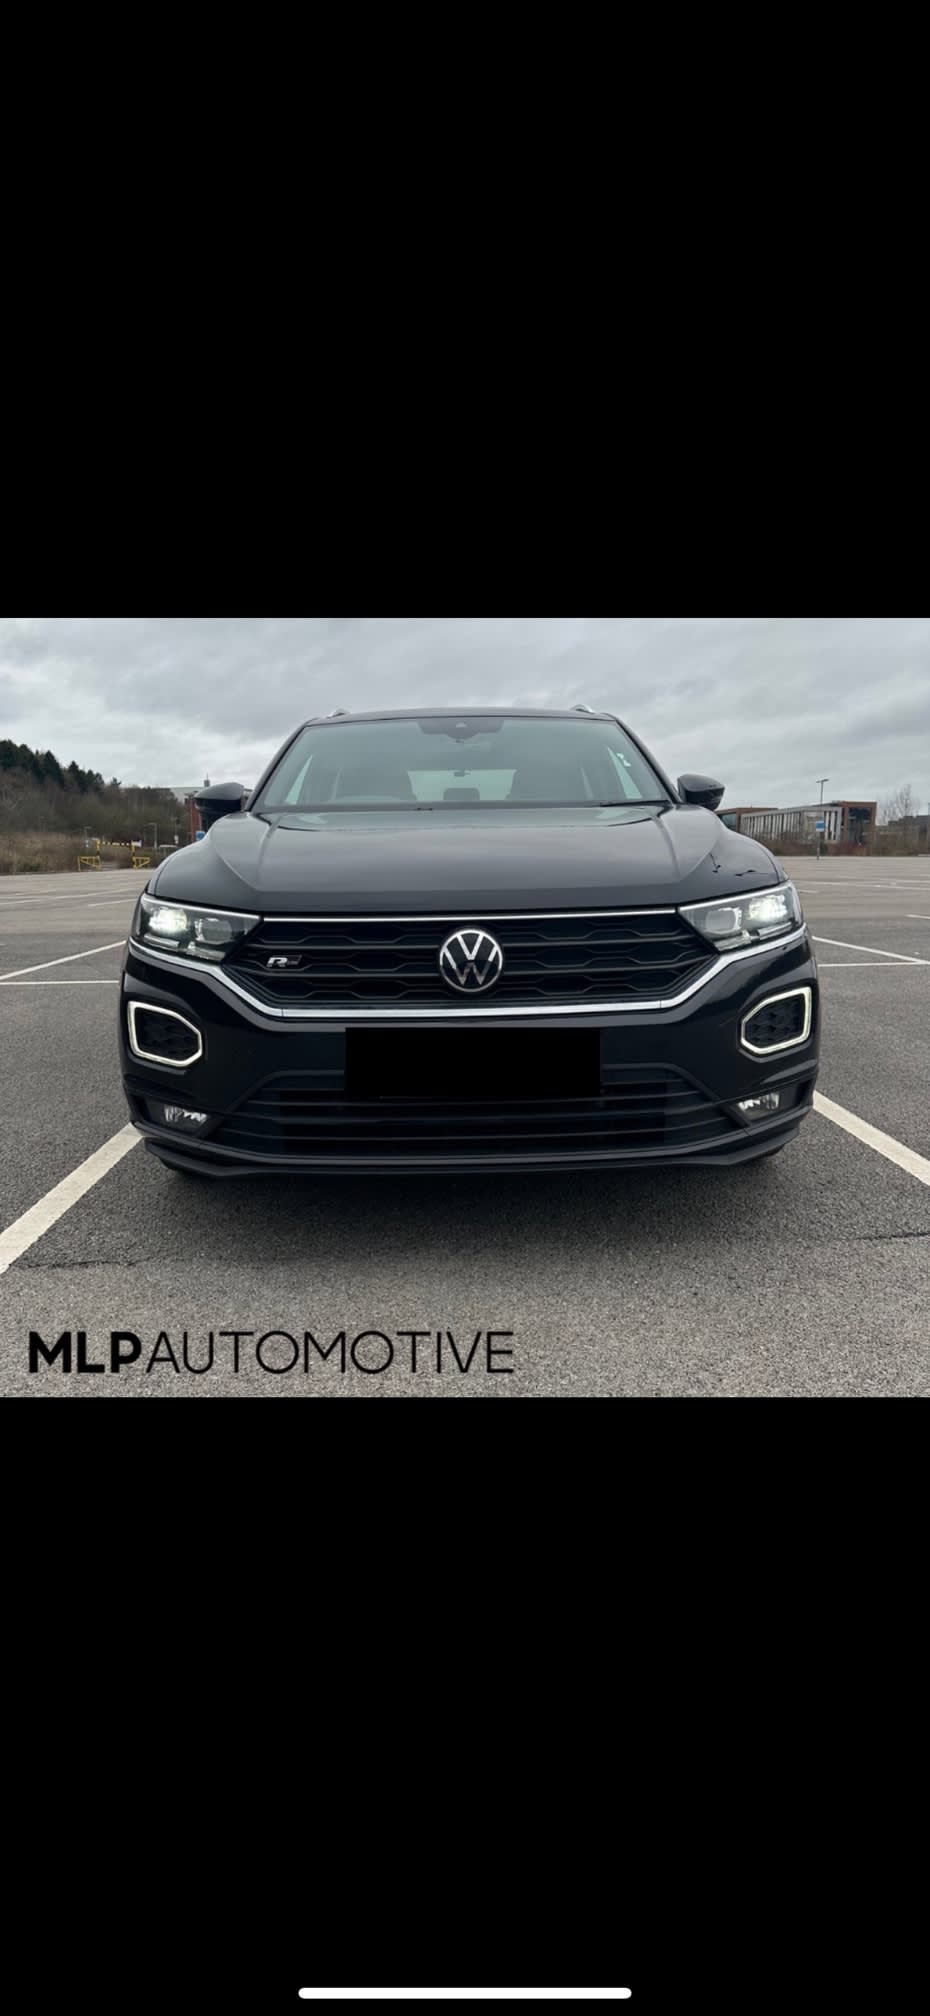 Images MLP Automotive Ltd